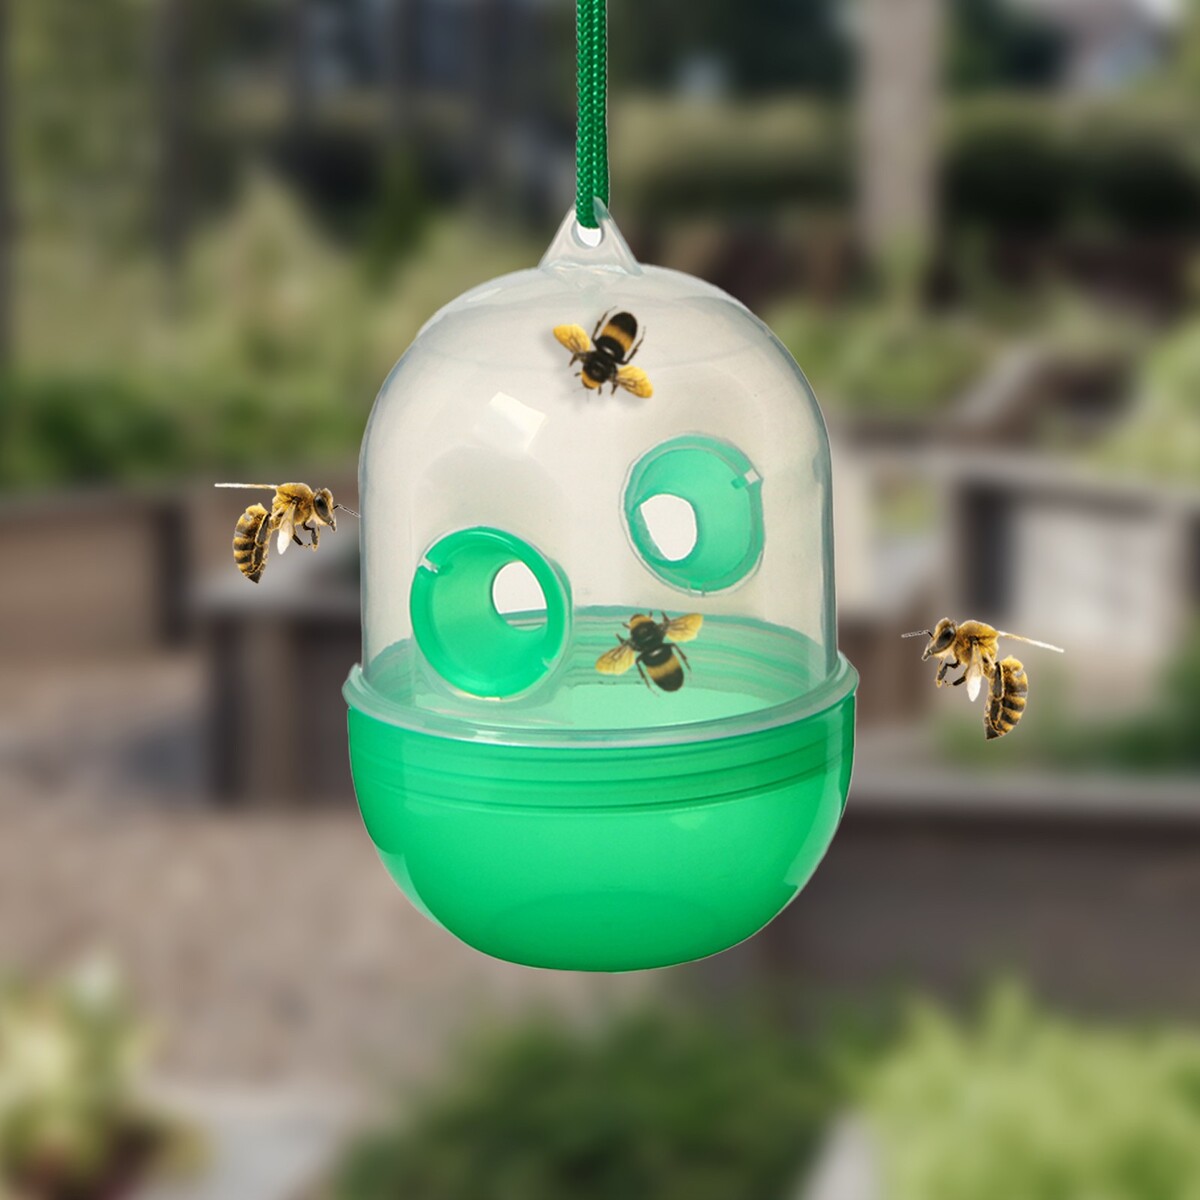 Ловушка для пчел и ос, зеленая, greengo ловушка для золушки